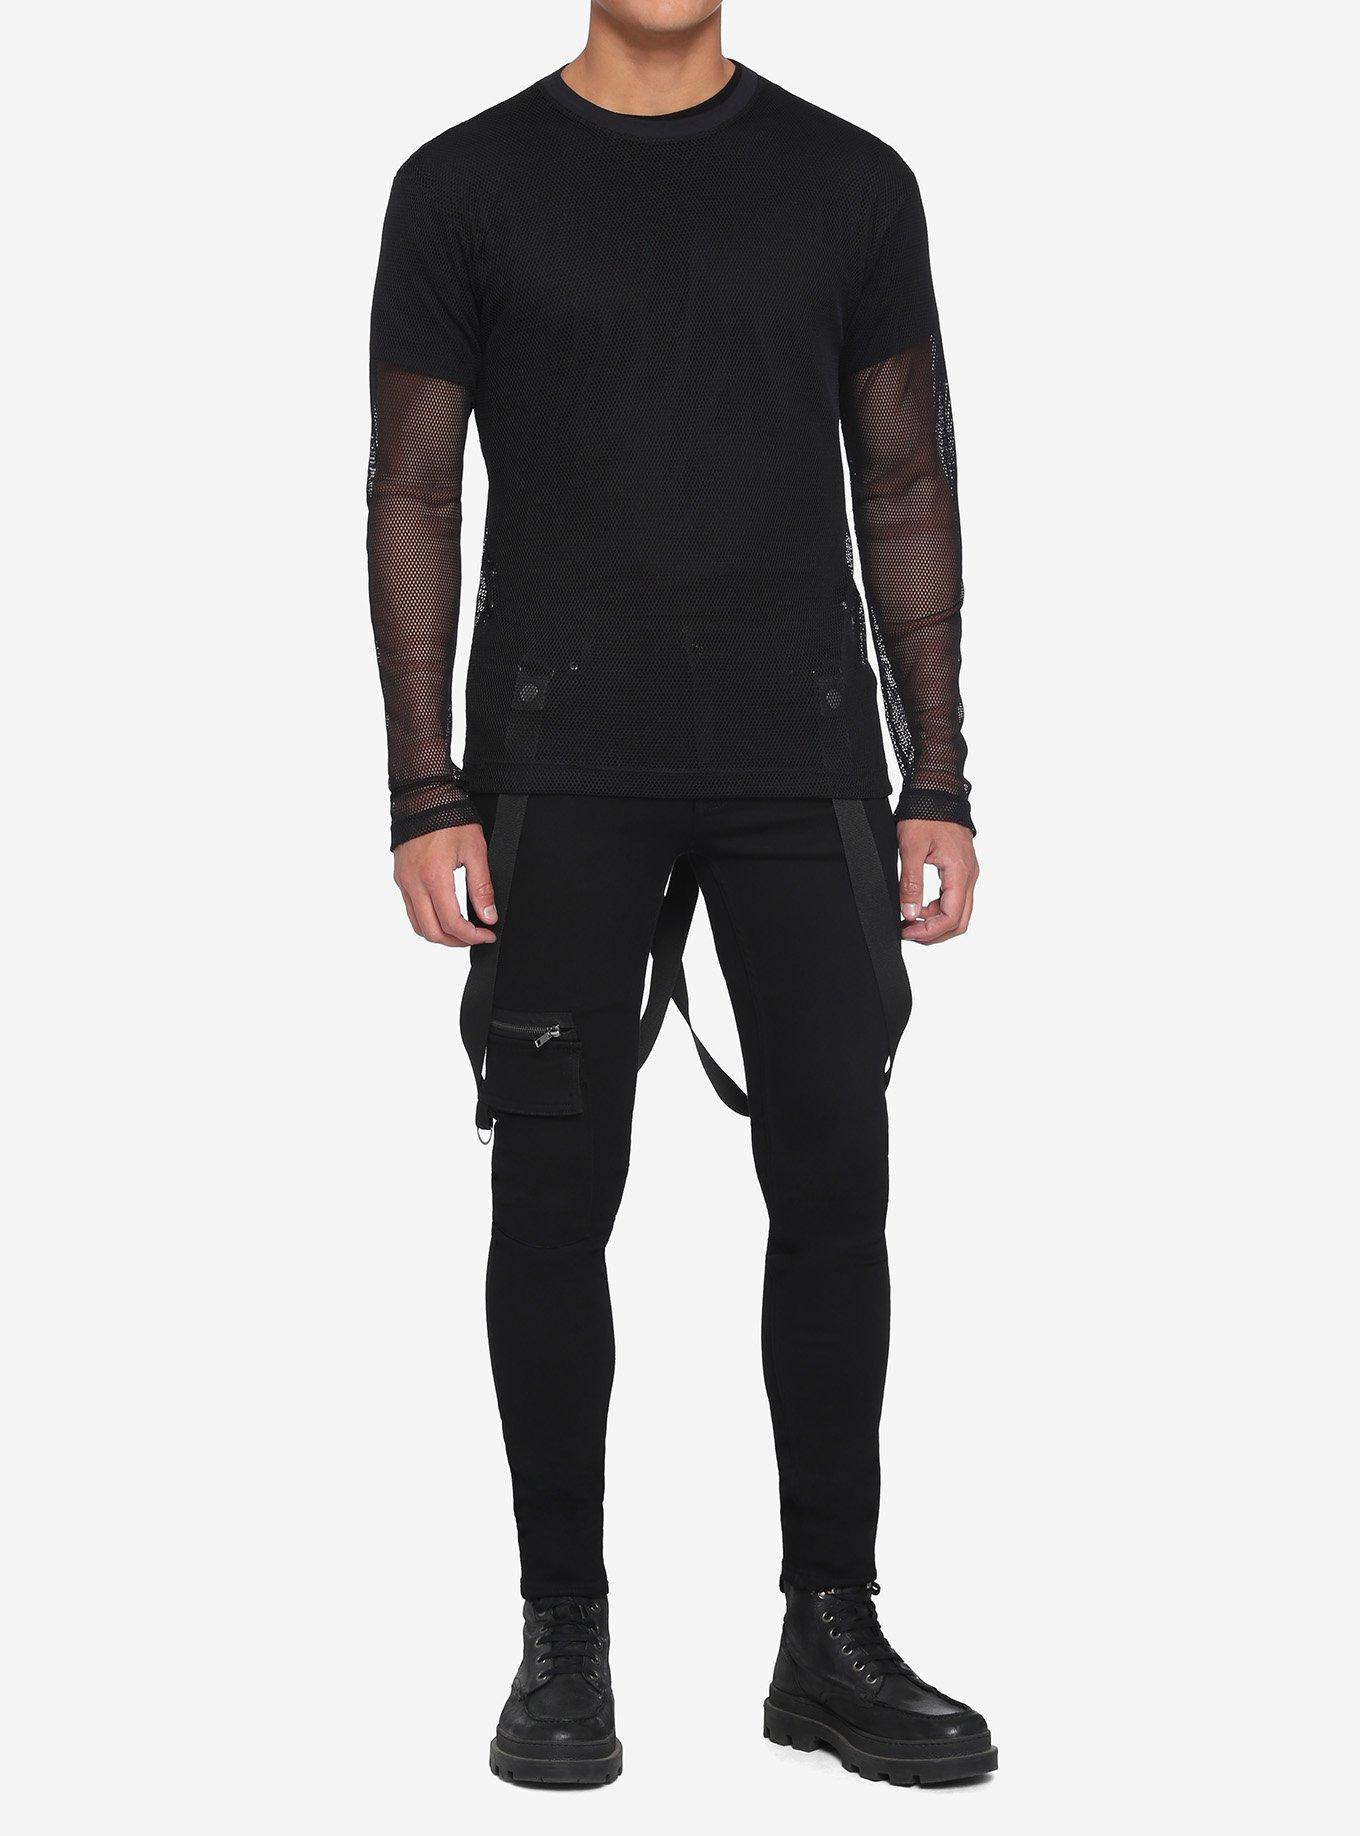 Black Fishnet Long-Sleeve Top, BLACK, alternate